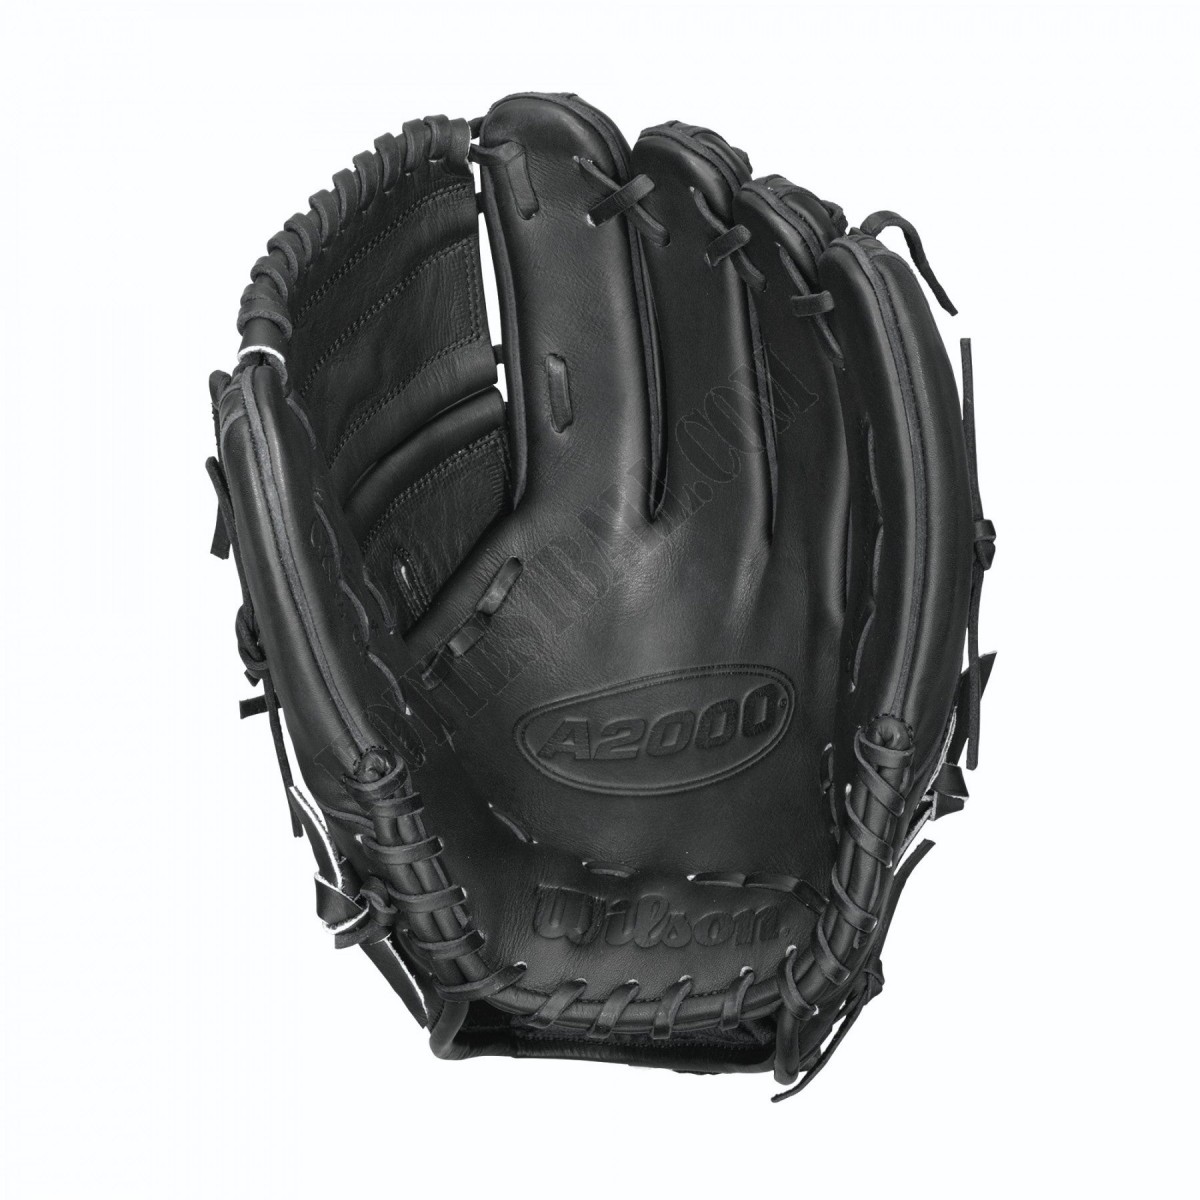 2021 A2000 CK22 GM 11.75" Pitcher's Baseball Glove ● Wilson Promotions - -2